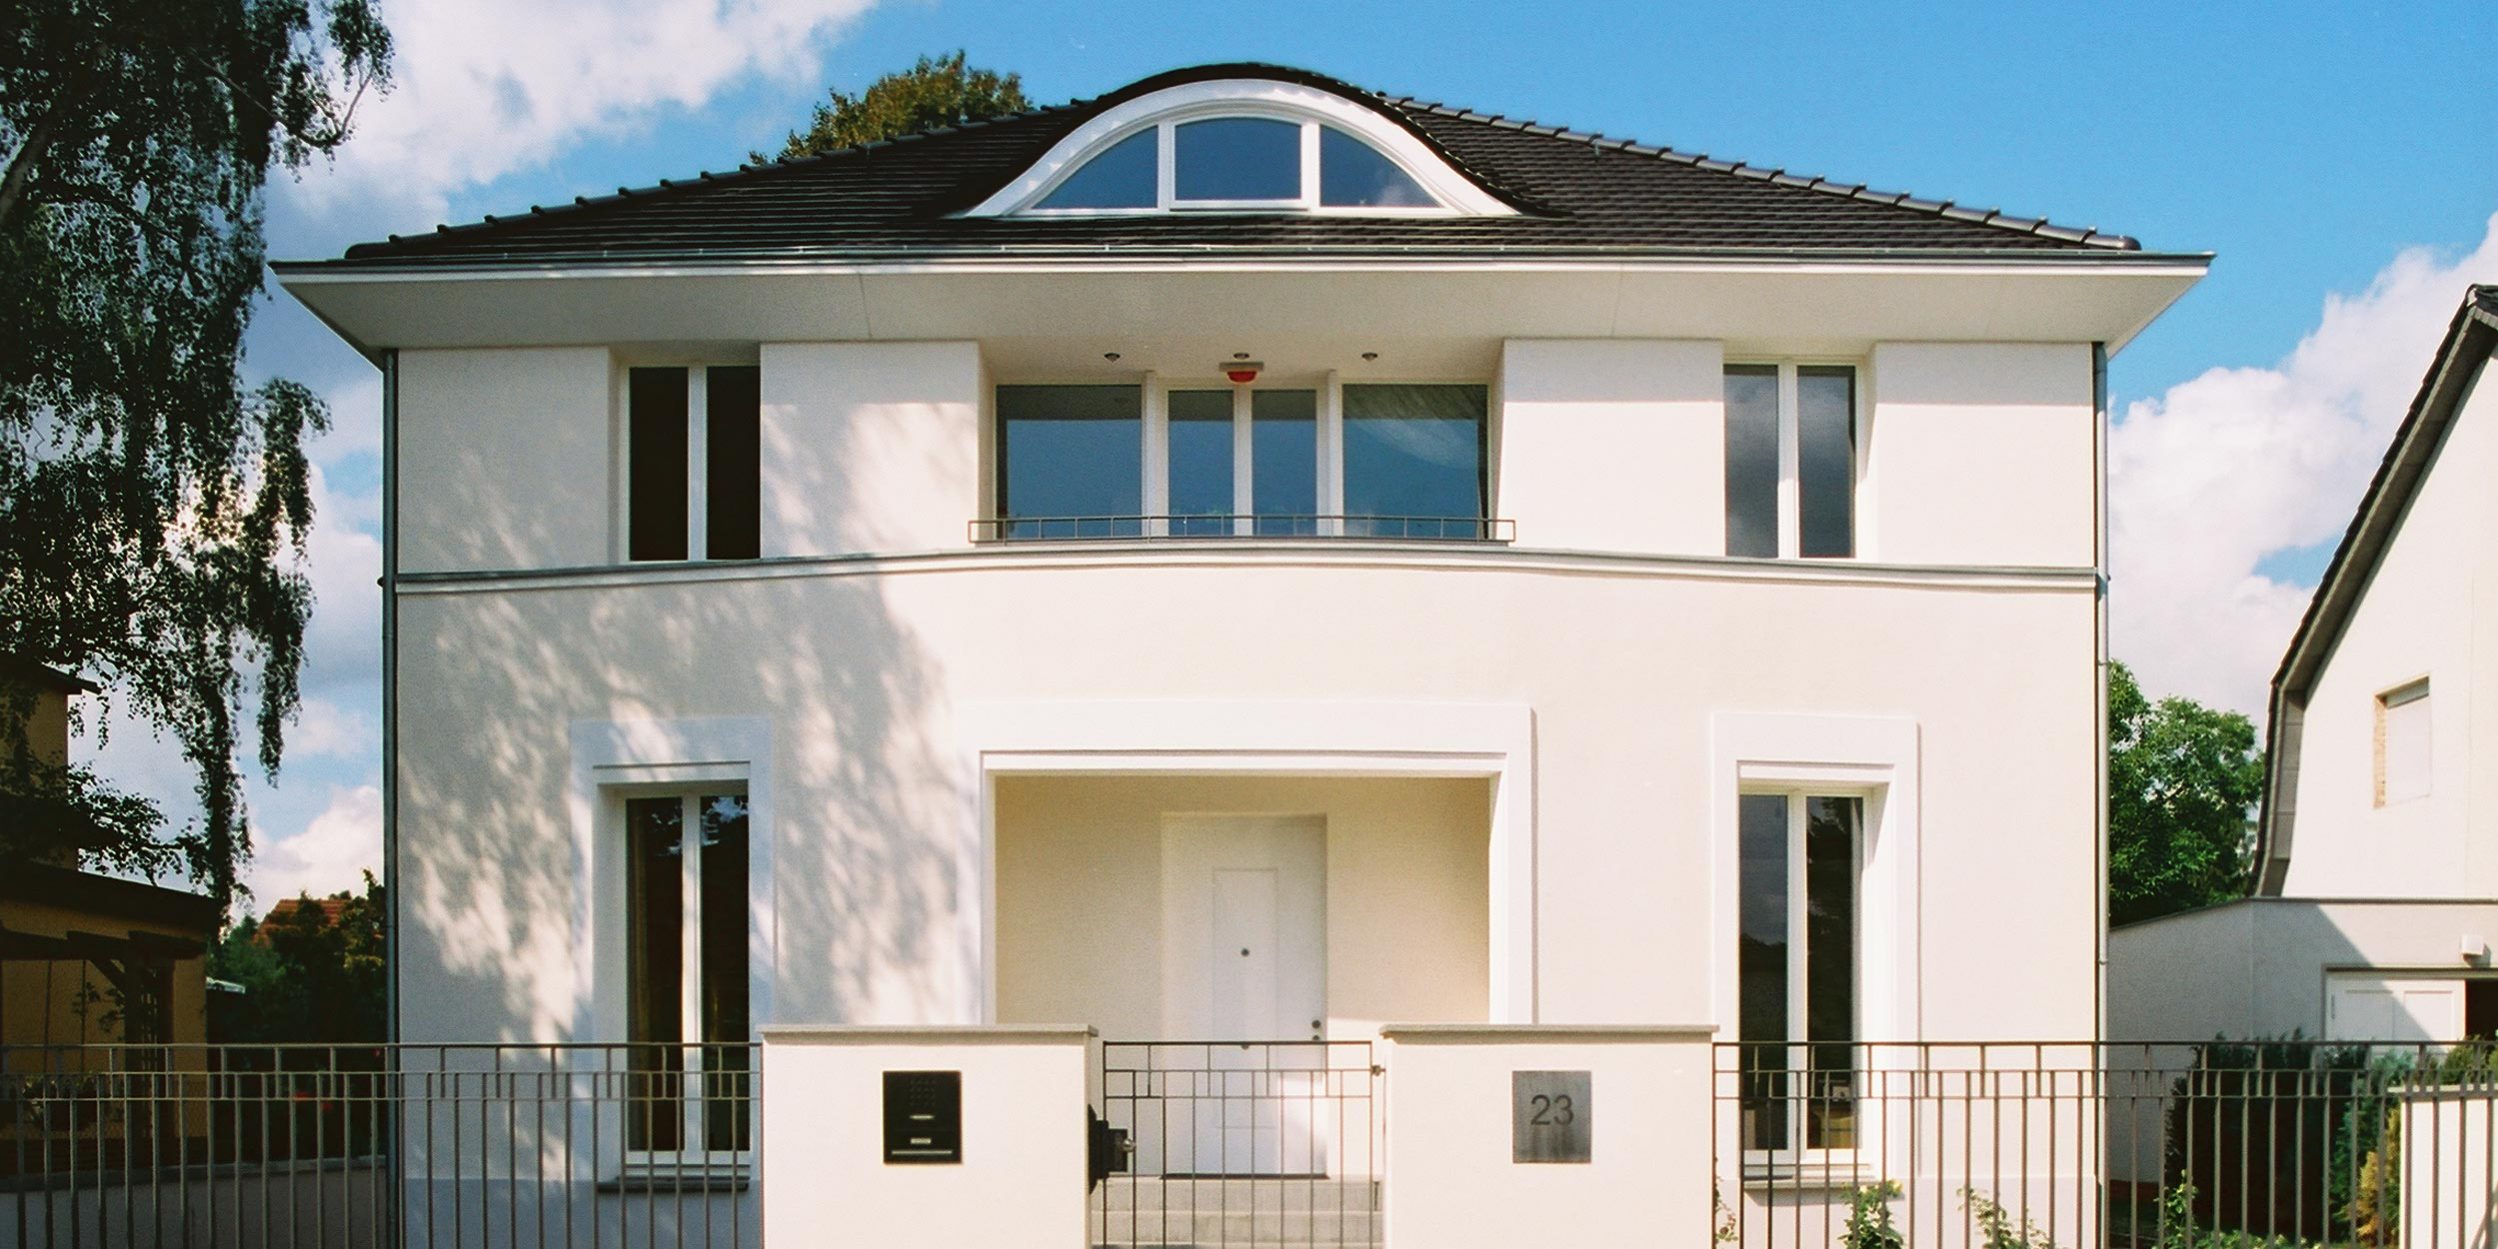 Der Gestaltung der symmetrischen Hauptfassade liegen klassische Gestaltungsprinzipien zu Grunde.